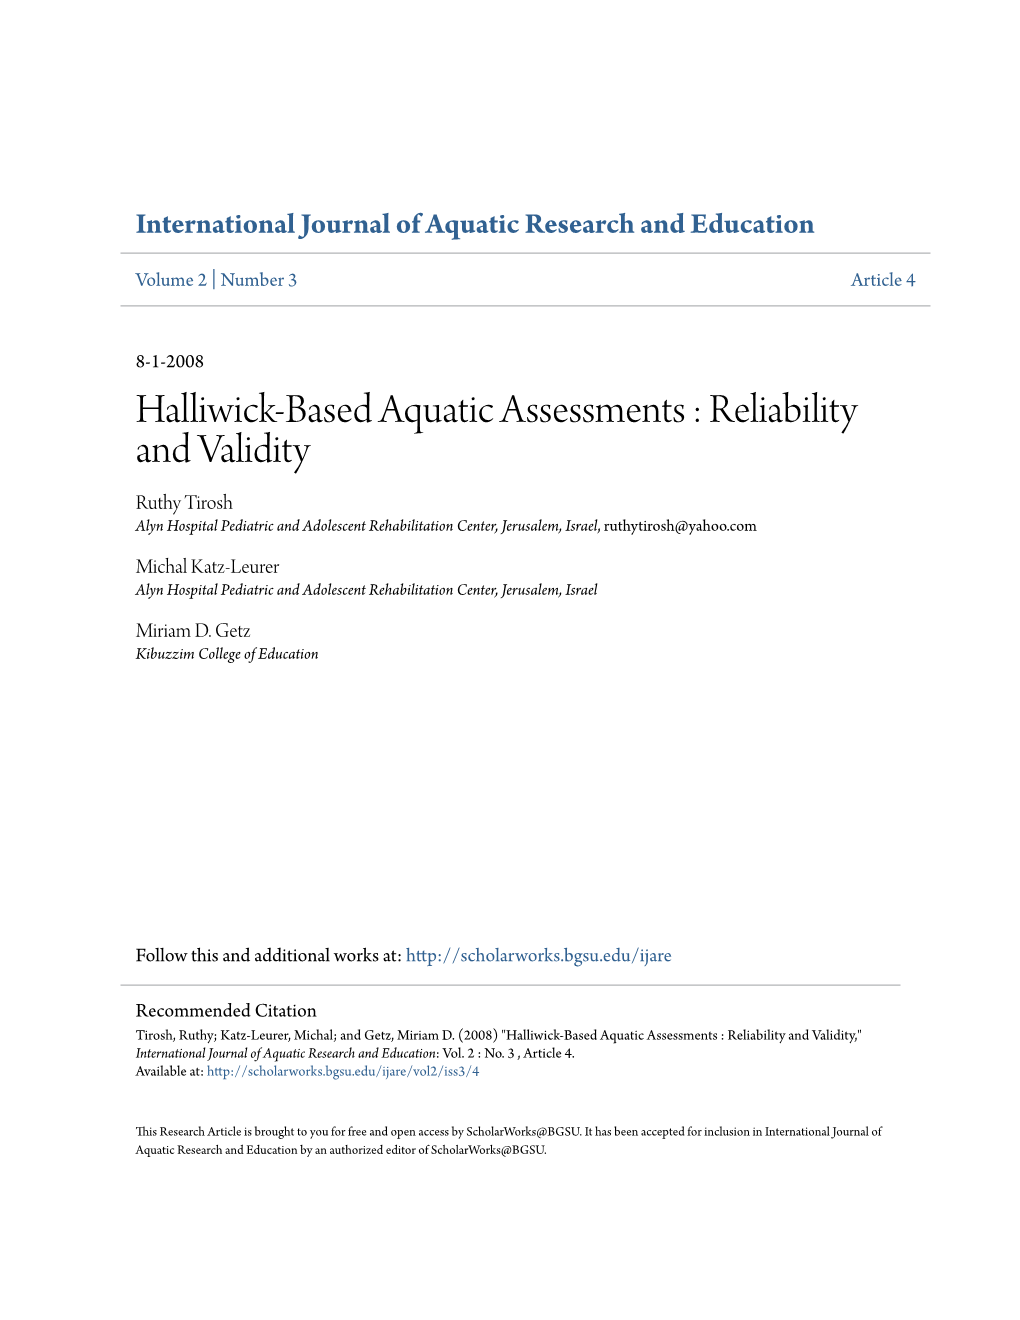 Halliwick-Based Aquatic Assessments